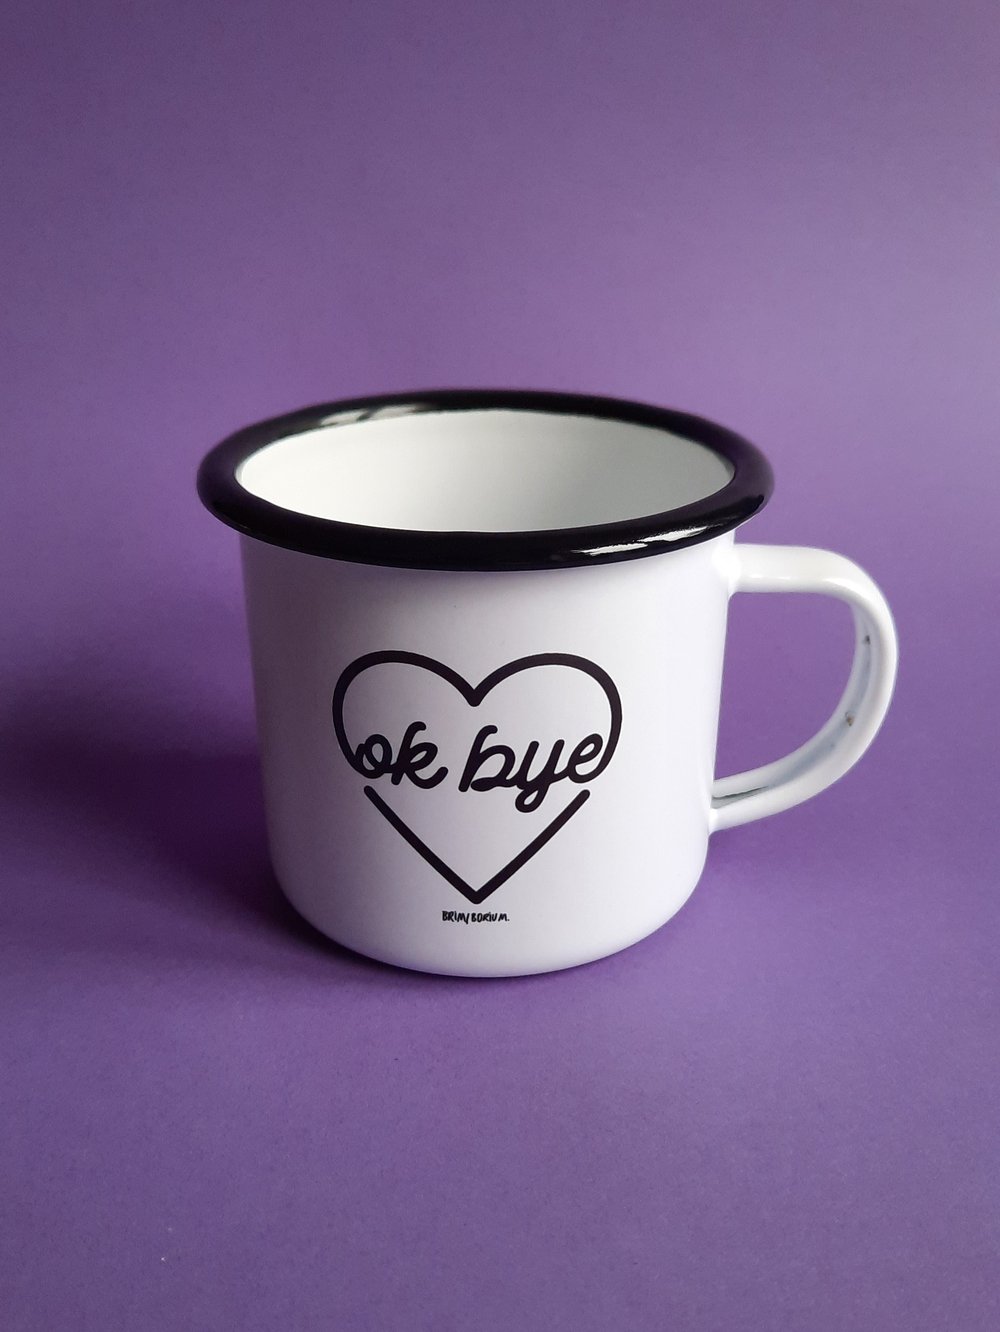 'OK BYE' CUP 